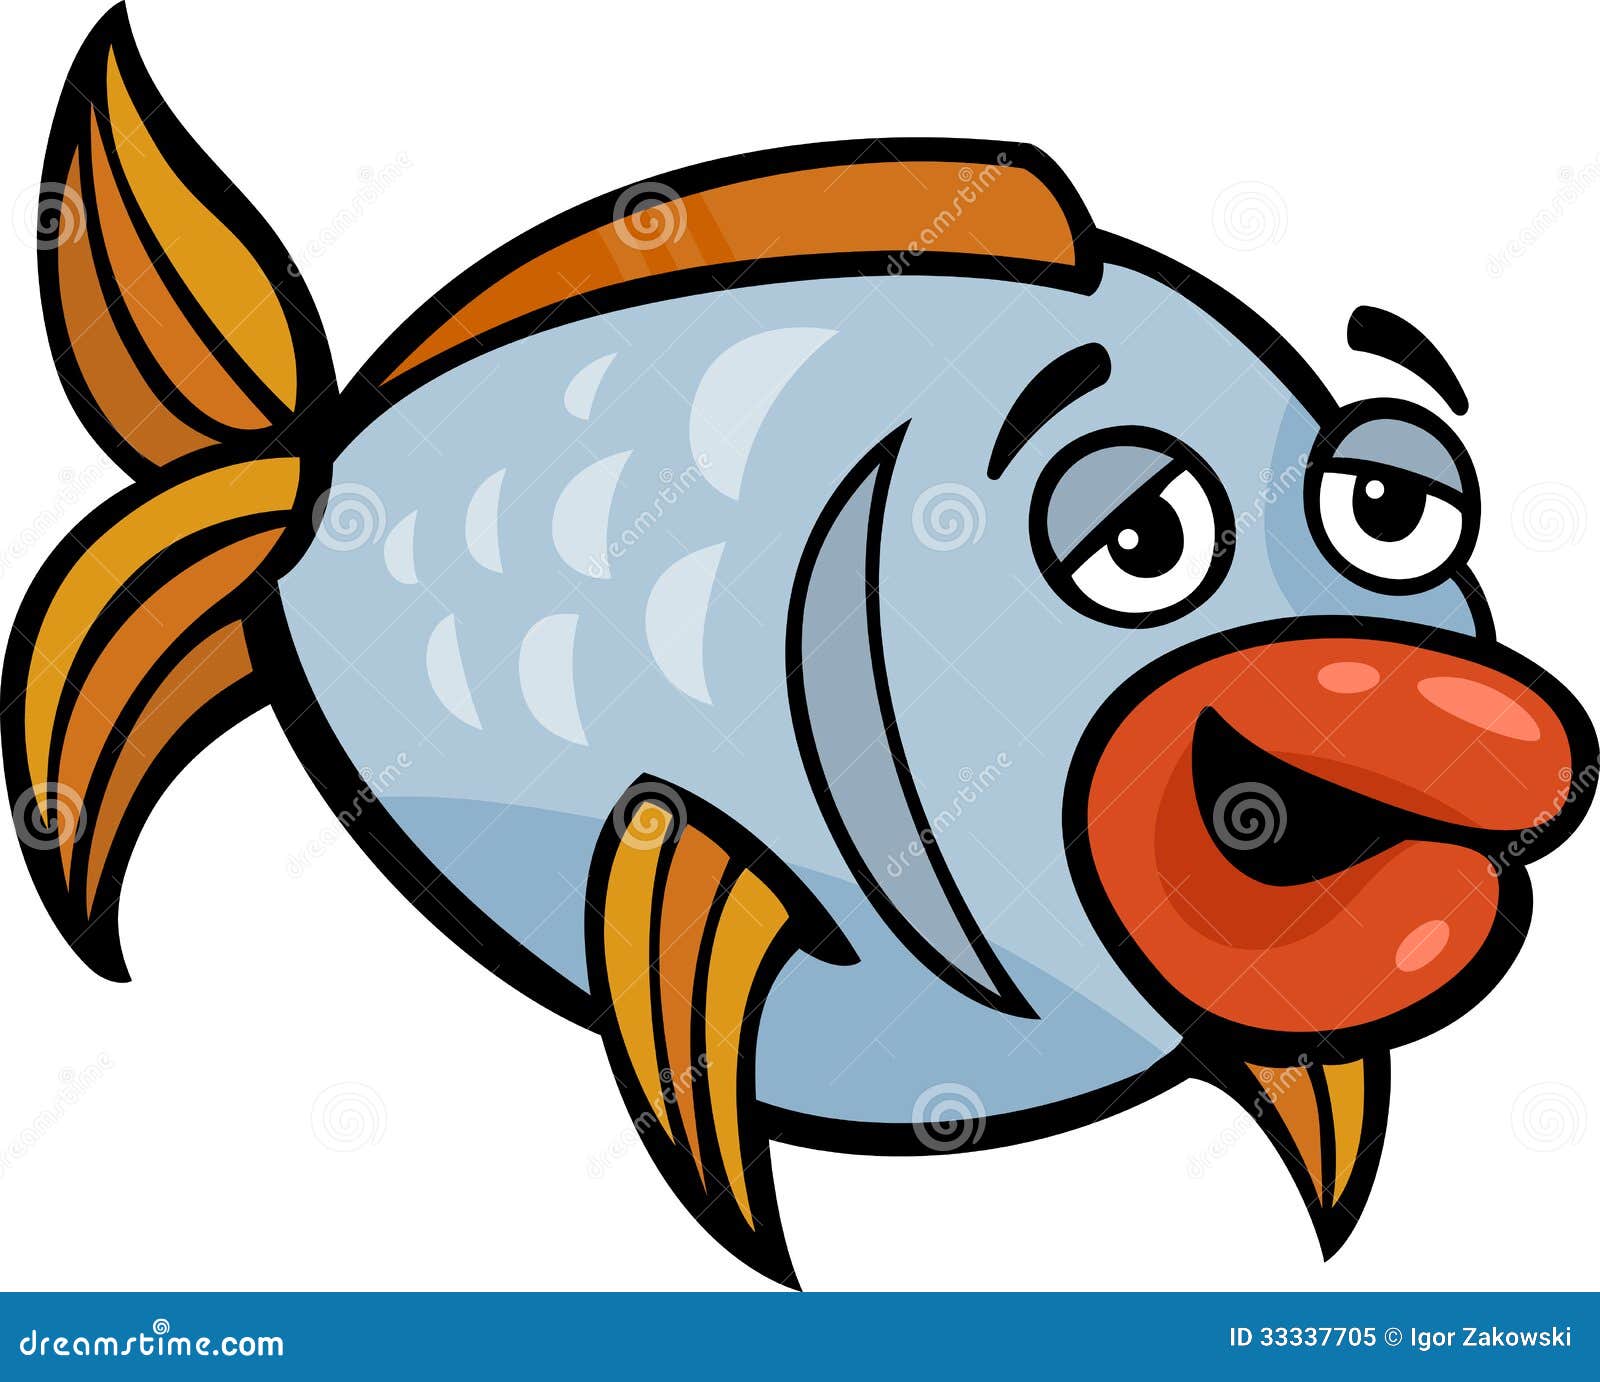 Funny Fish Cartoon Illustration Stock Vector - Illustration of ...